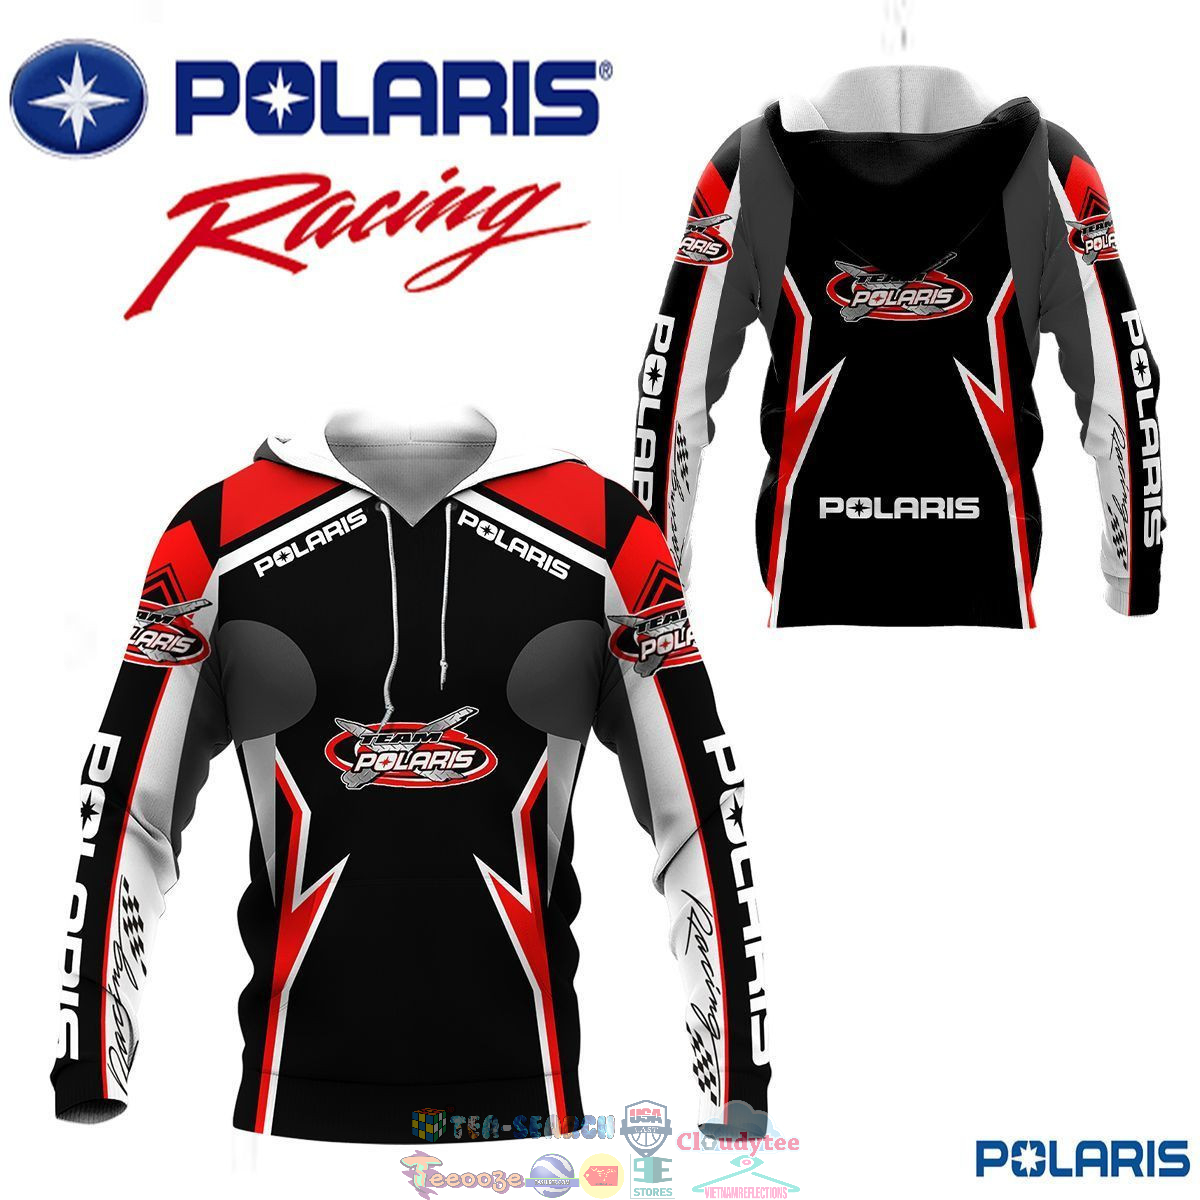 Polaris Racing Team ver 7 3D hoodie and t-shirt